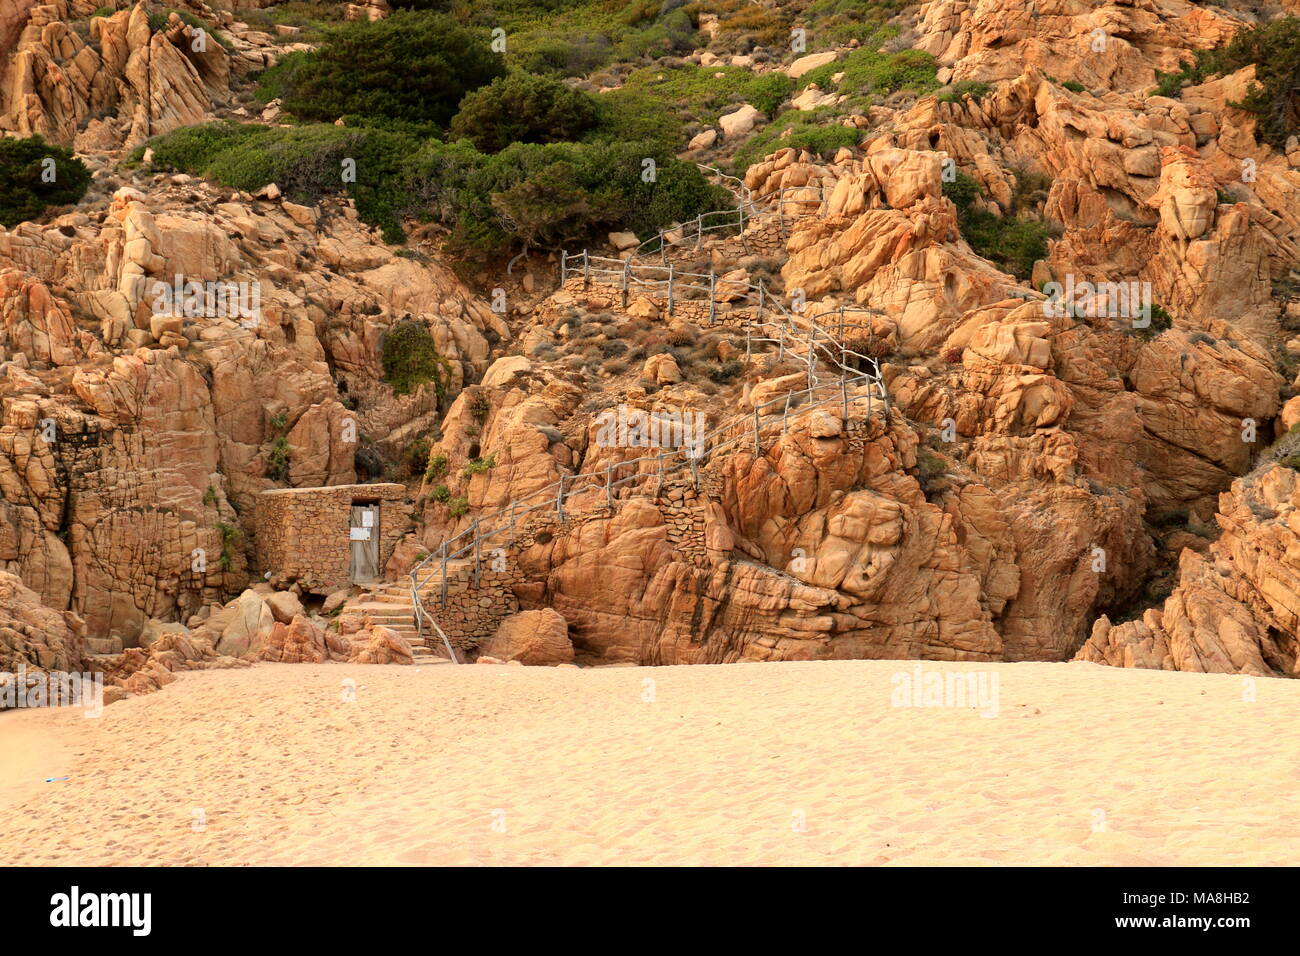 Spiaggia Li Cossi in estate - Costa Nord Sardegna - ottimo luogo per le vacanze Foto Stock